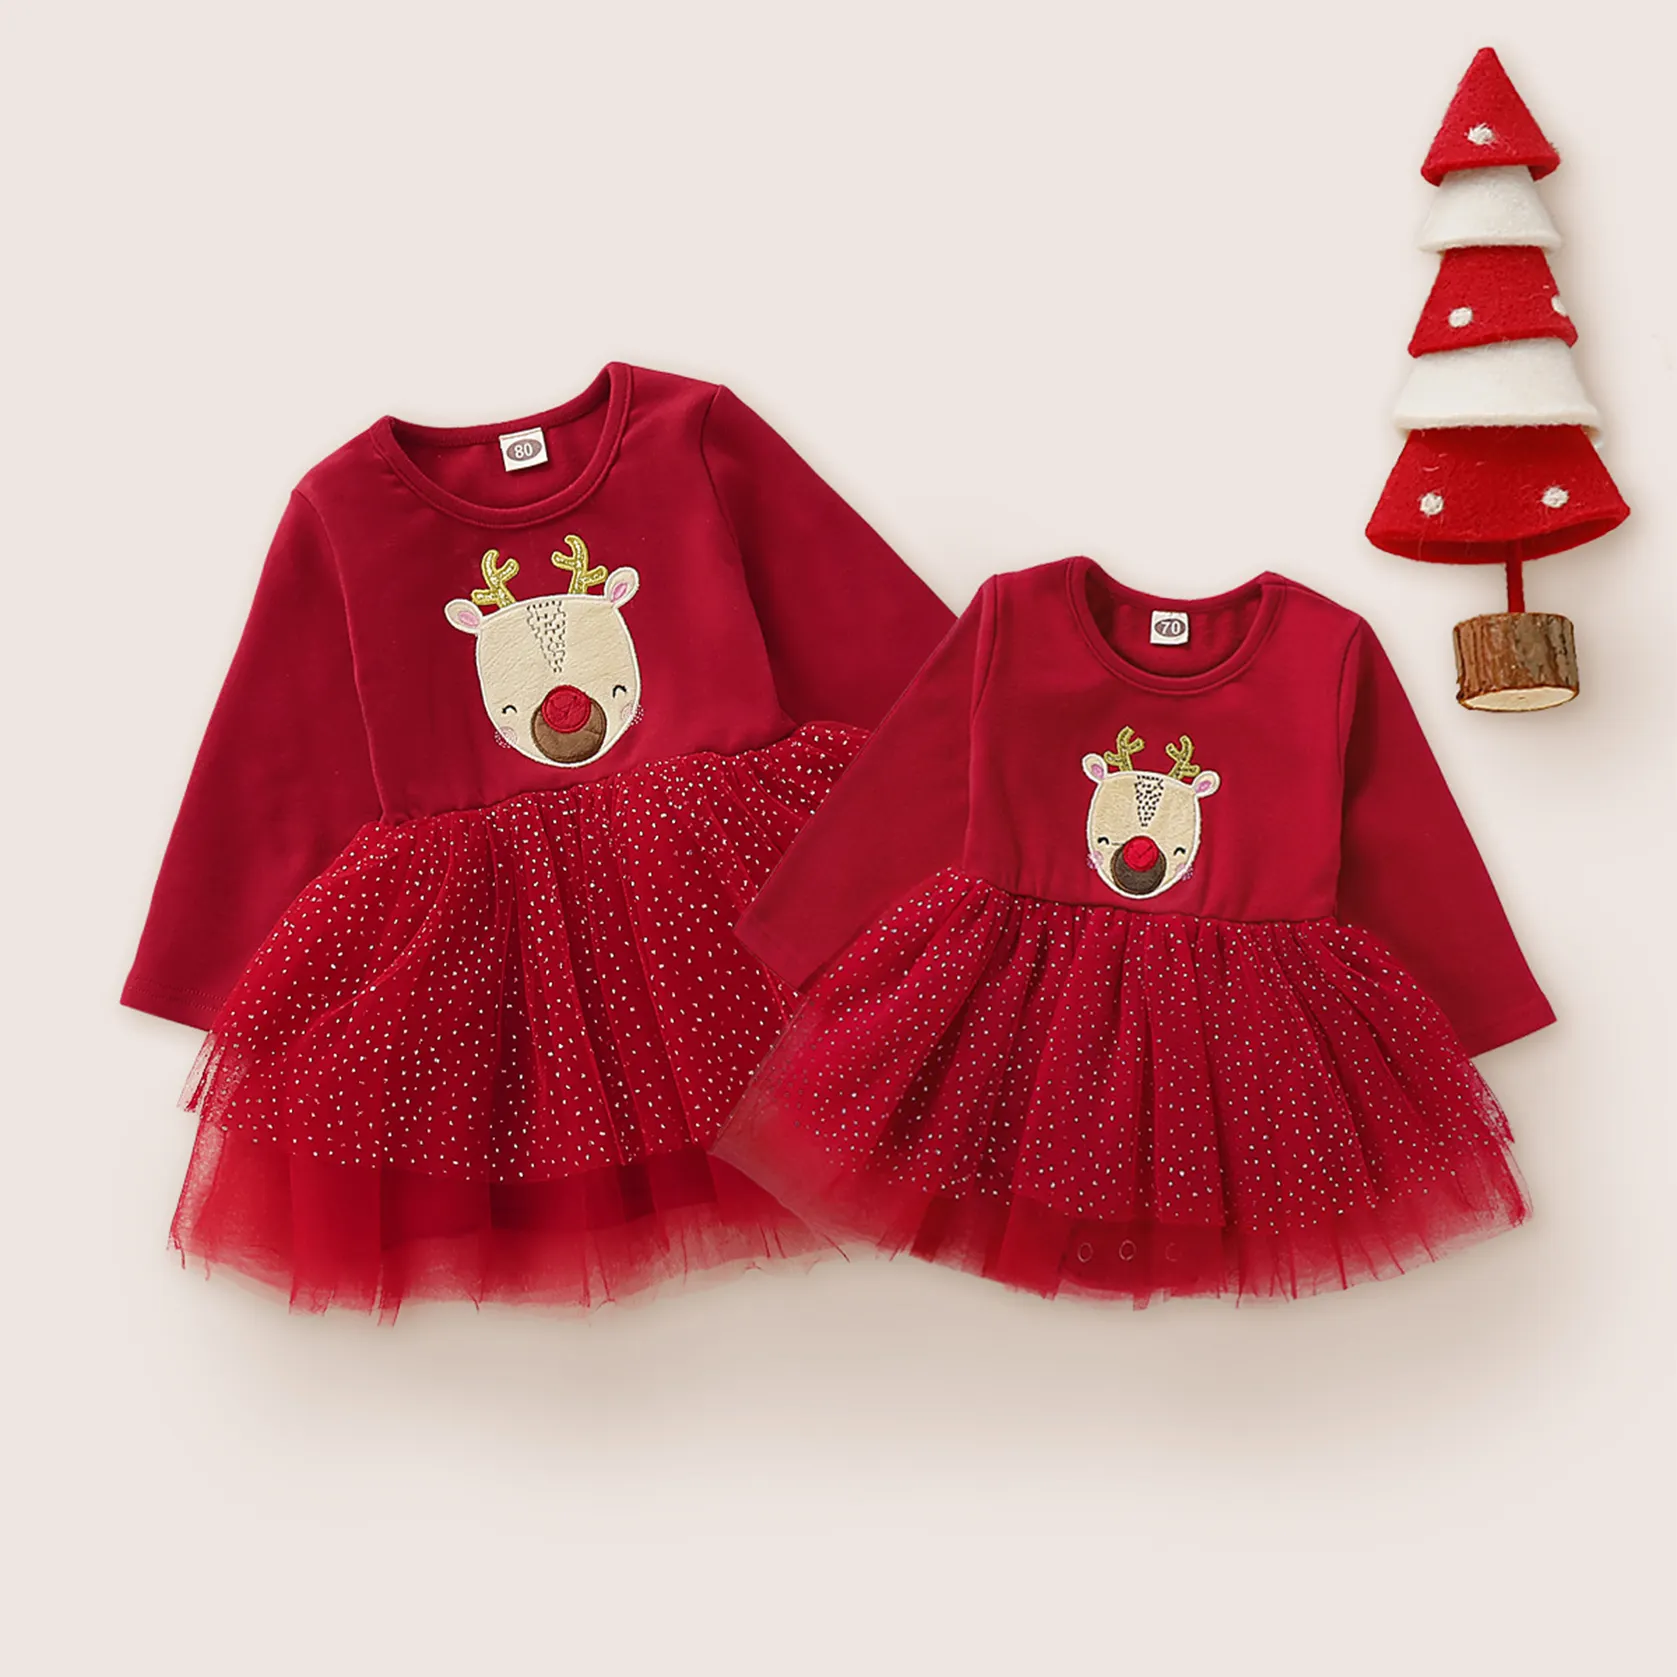 New Baby Weihnachts kleid Langarm Cartoon Print Stram pler Kleid Baby Smock Outfits Baby Weihnachten Cartoon Mesh Kleid